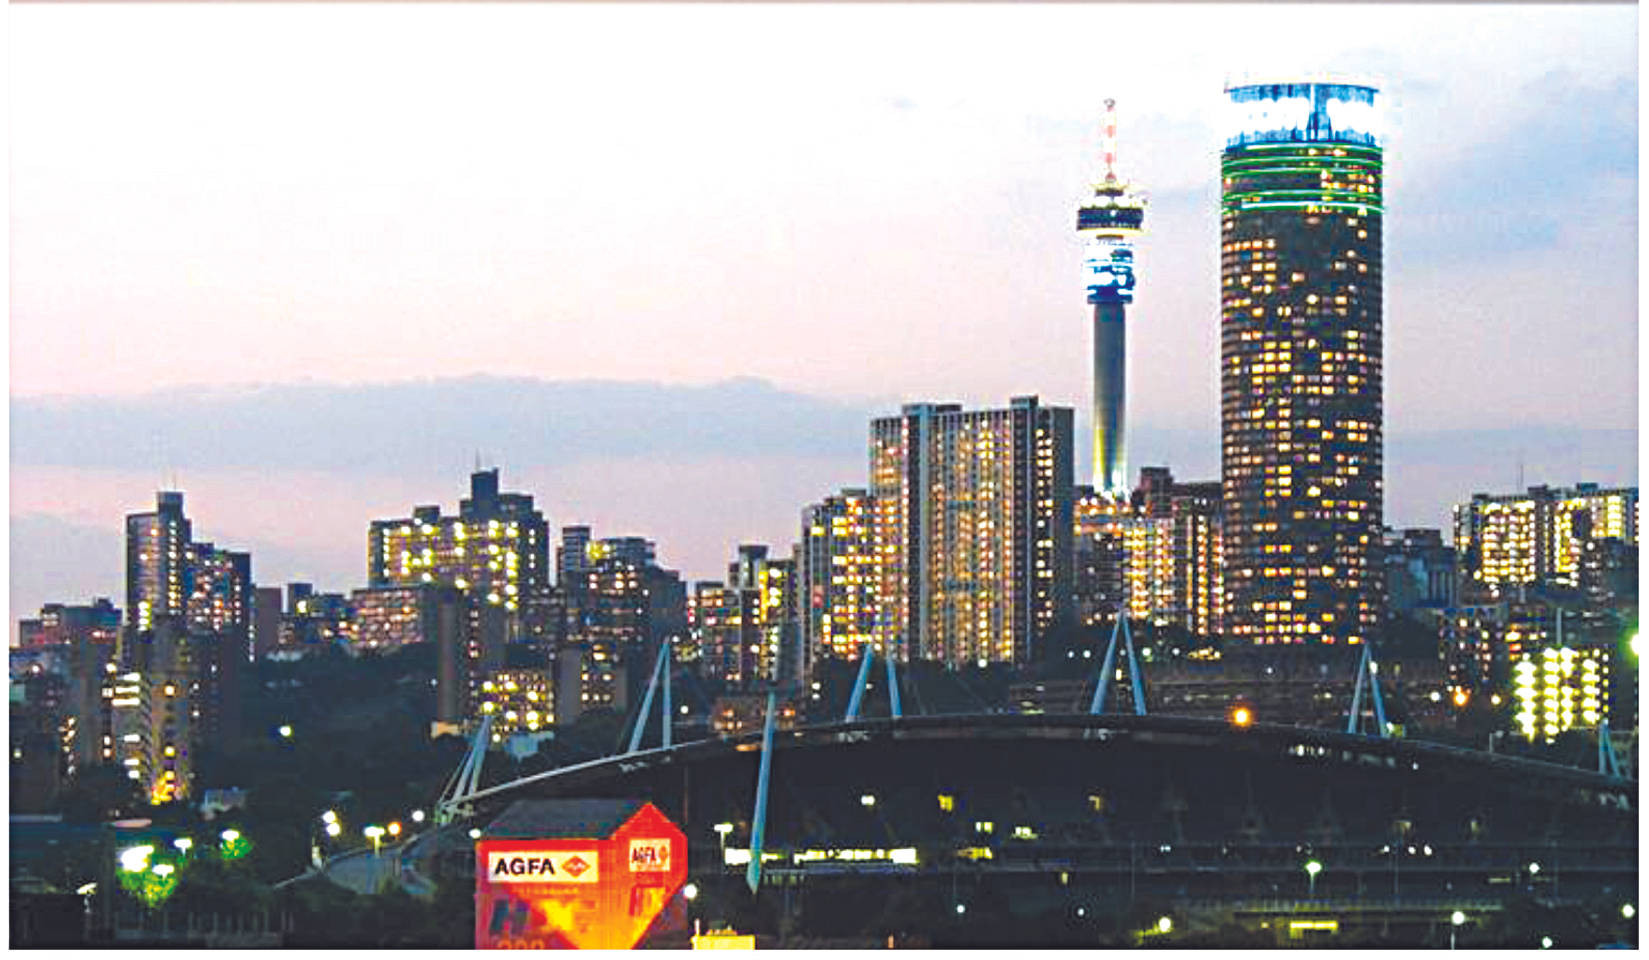 Høje skyskrabere Carlton Centre Johannesburg Wallpaper